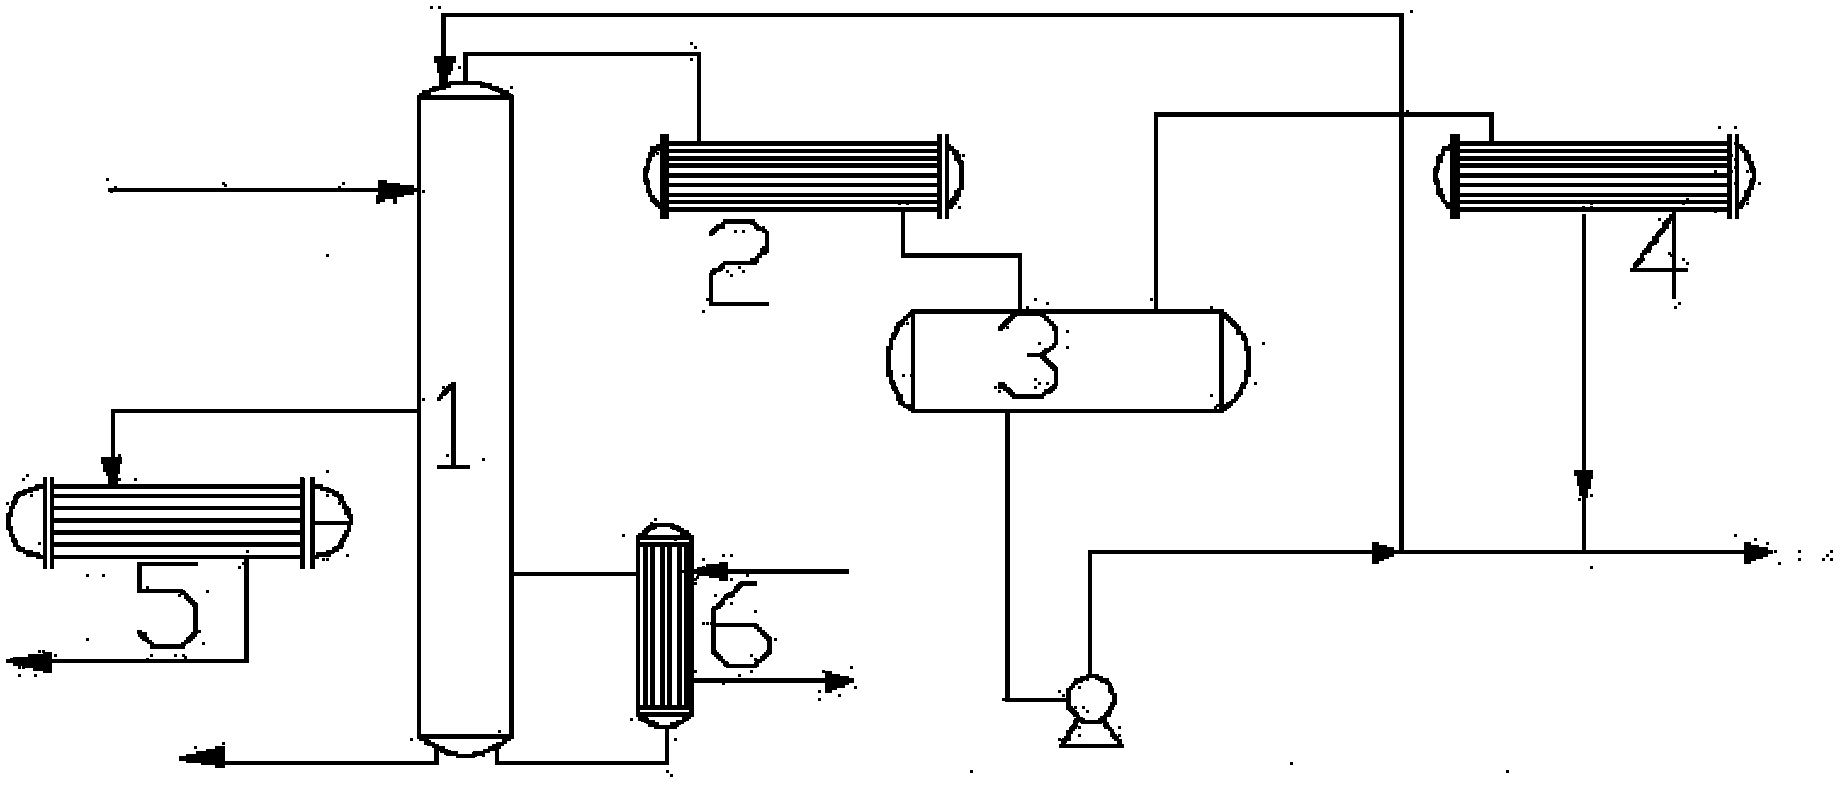 Method for solvent refining during isoprene rubber production